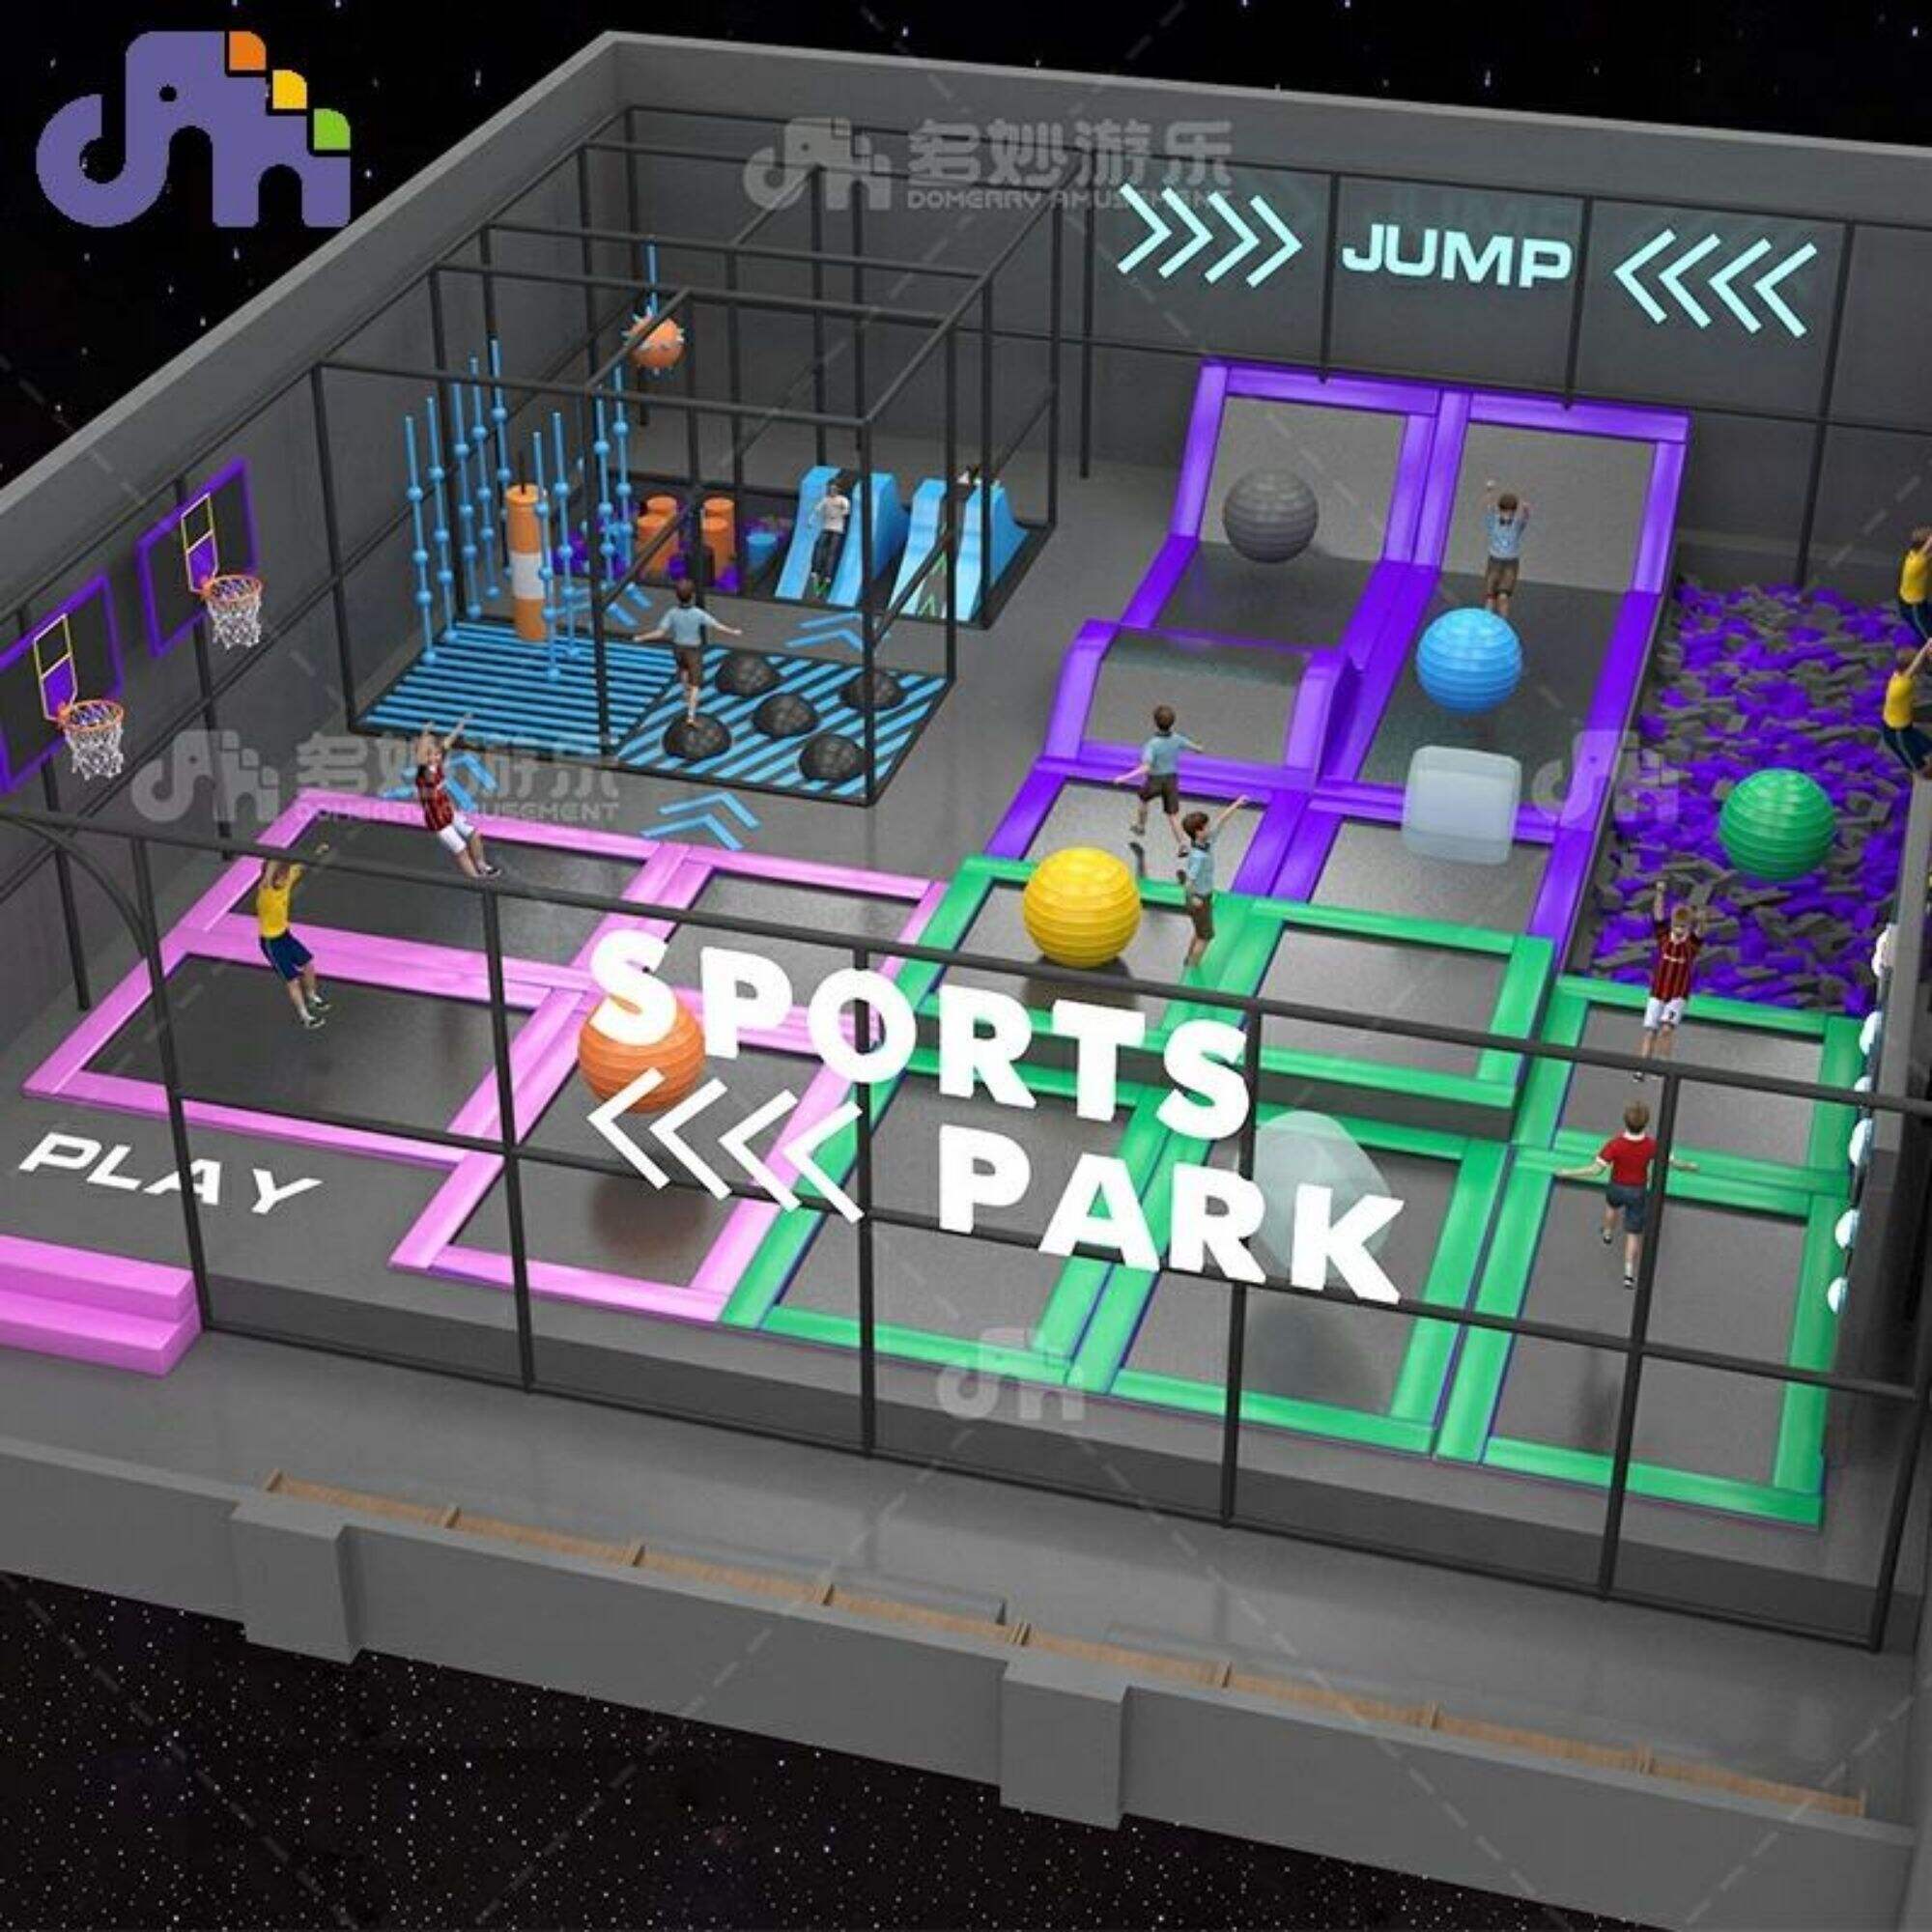 Большой крытый батут Domerry, игровое оборудование, спортивный парк развлечений для детей и взрослых